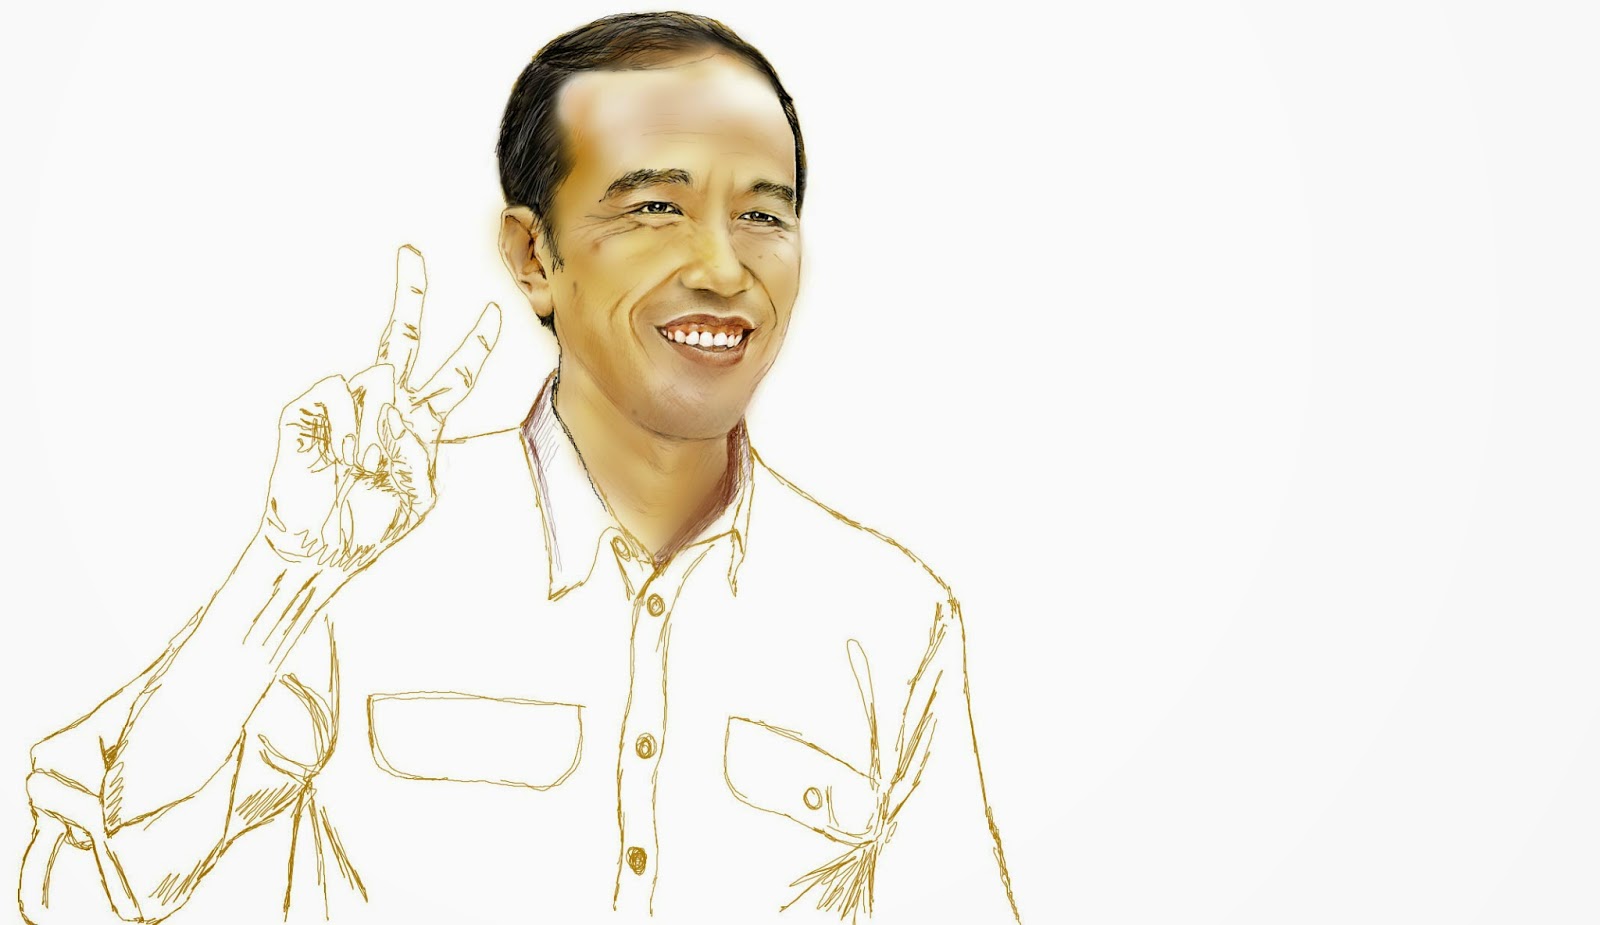  Sketsa  Gambar  Jokowi  Garlerisket